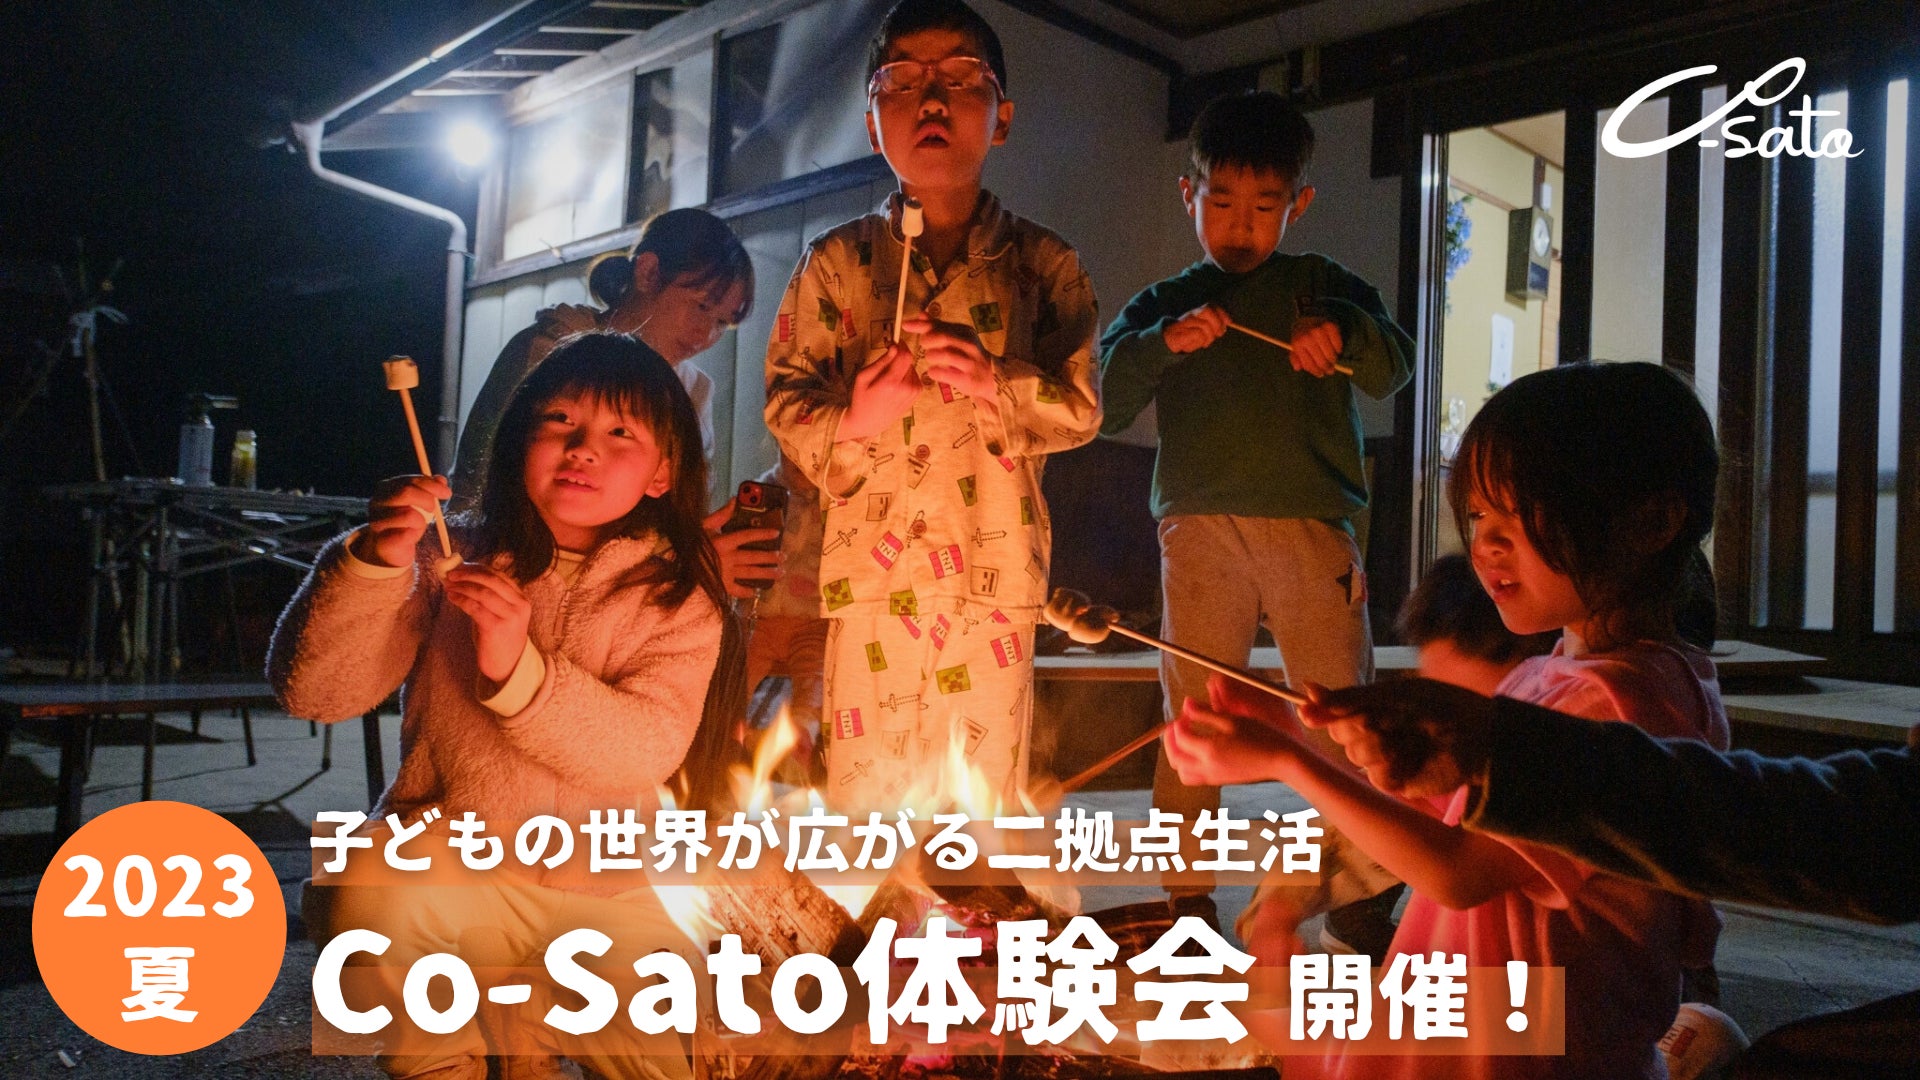 子どもの世界を広げる二拠点生活サービス”Co-Sato” 夏のCo-Sato体験会の申し込み受付を開始のサブ画像1